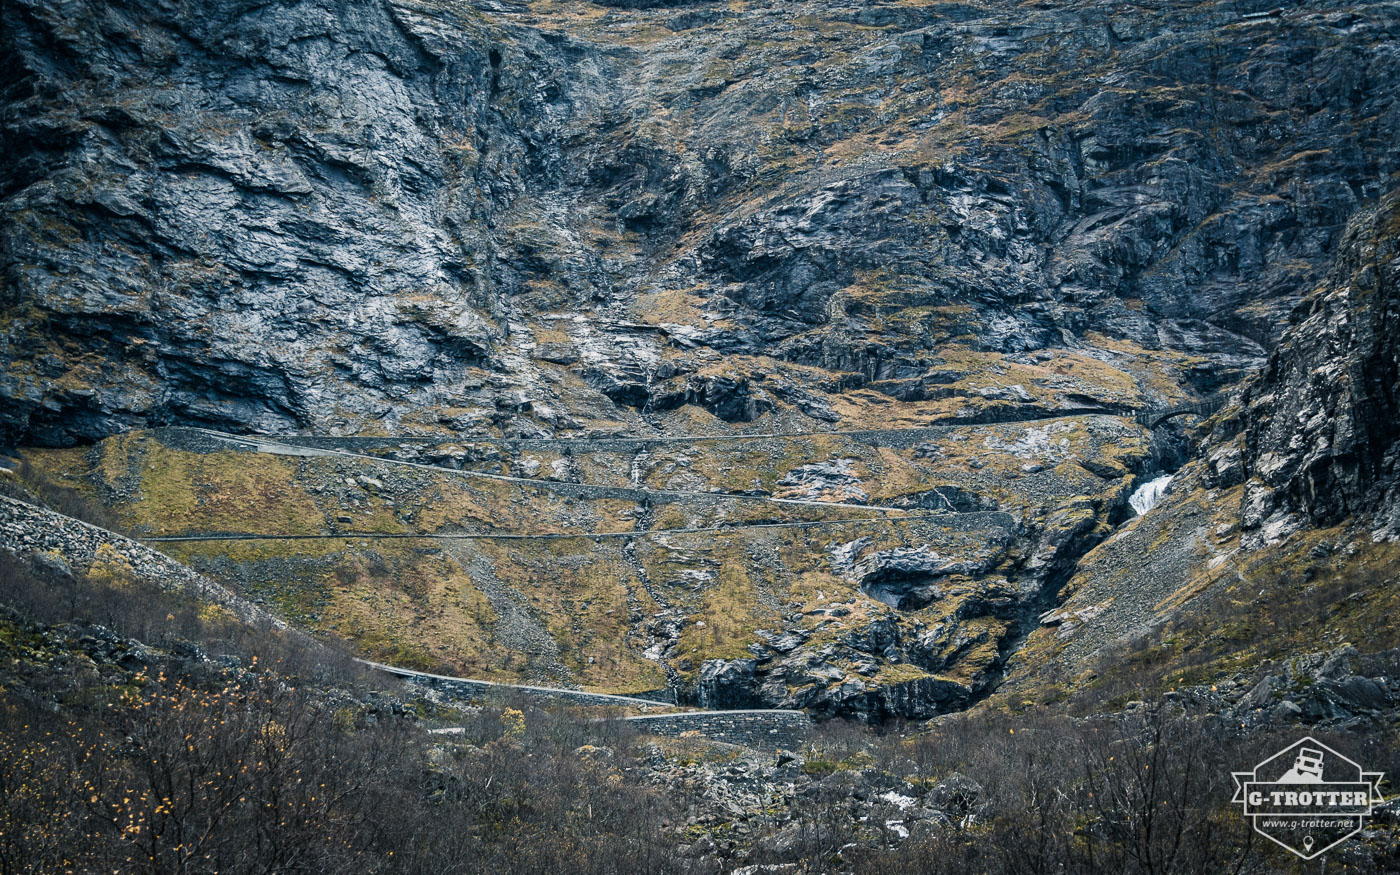 Trollstigen leads up a steep mountainside.